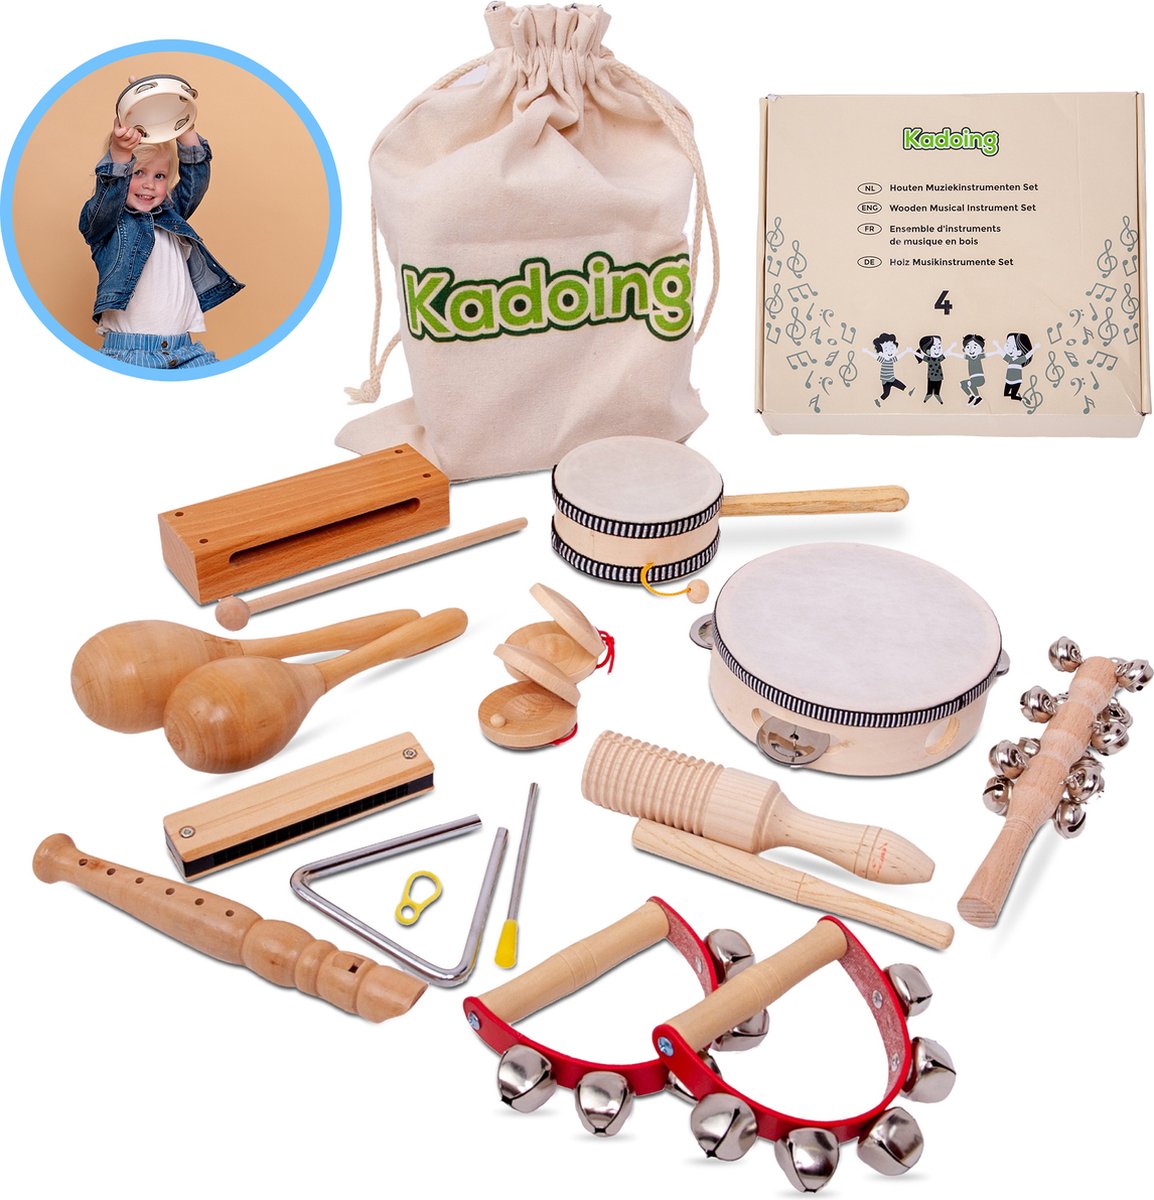 Kadoing 18-Delige Houten Muziekinstrumenten Set - Duurzaam Cadeau - Educatief Speelgoed - Verjaardag Thuis - Montessori School - Triangel - Tamboerijn - Fluit - Blokfluit - Rammelaar - Mondharmonica - Kinderspeelgoed - Muziek Voor Kinderen